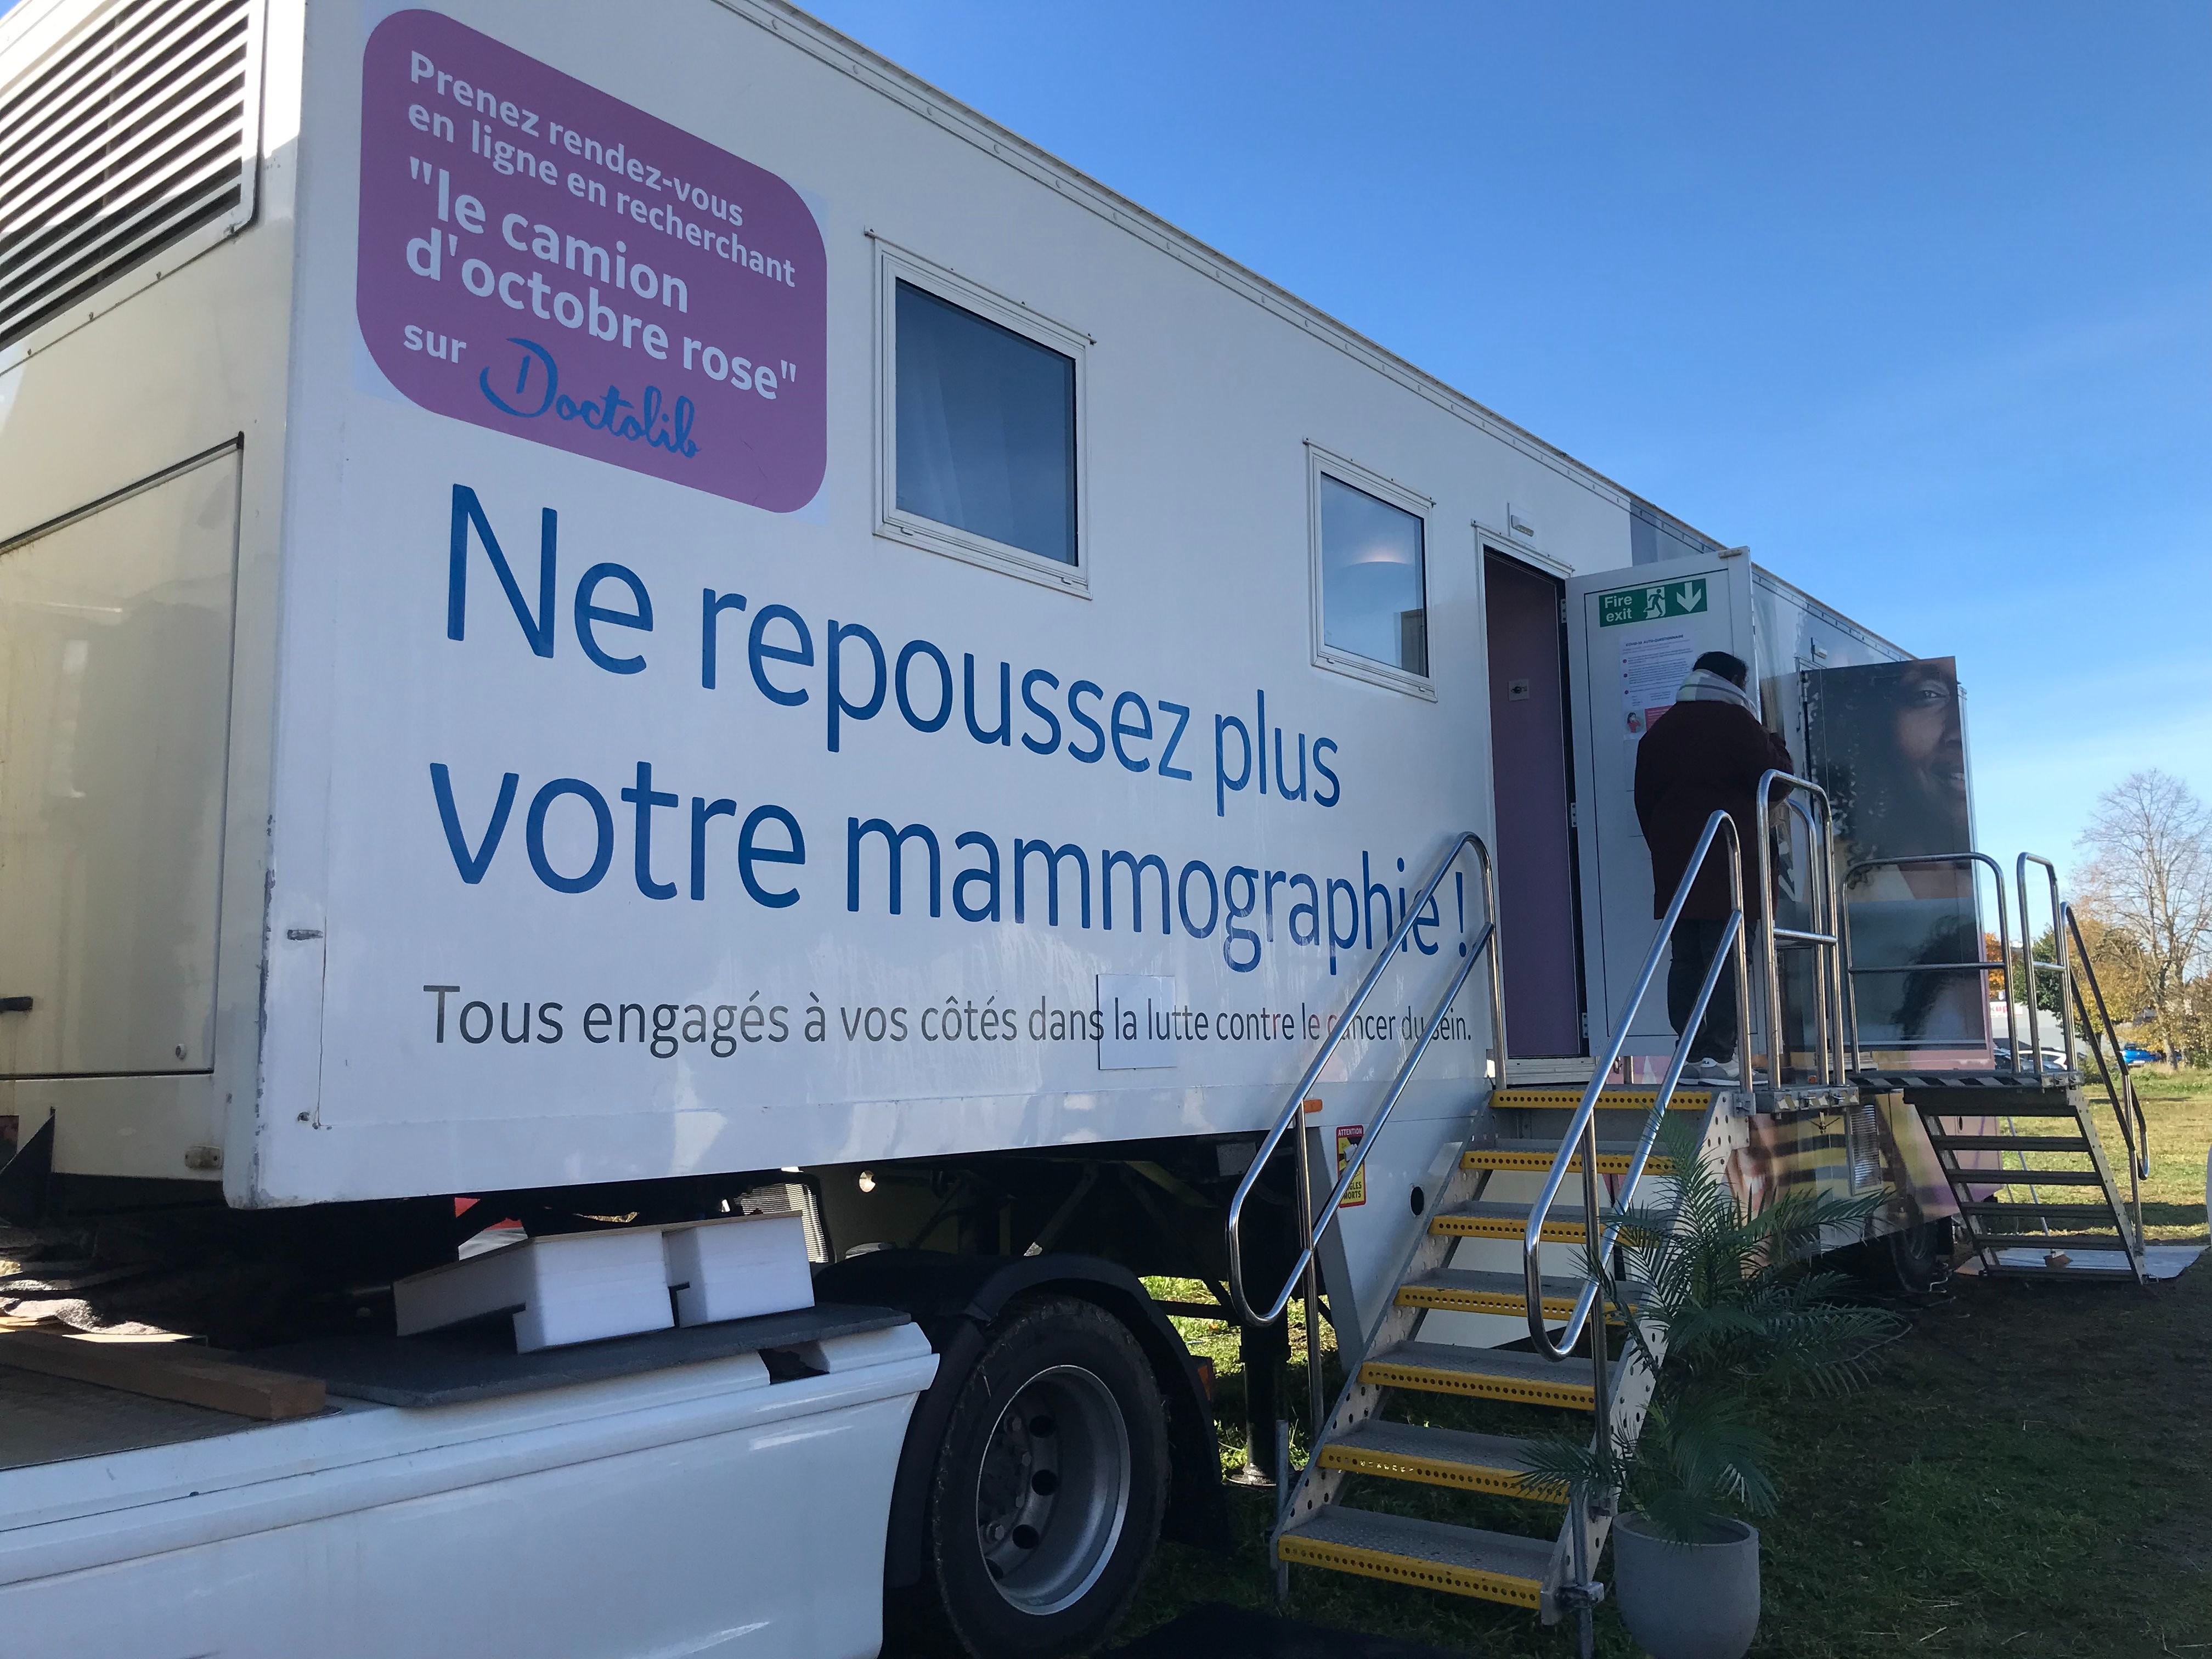 Le camion d'Octobre Rose, qui propose des mammographies et échographies gratuites, sera à Vitry le 13 octobre, à Cachan le 16 et à Bonneuil le 17. LP/Jeanne Cassard